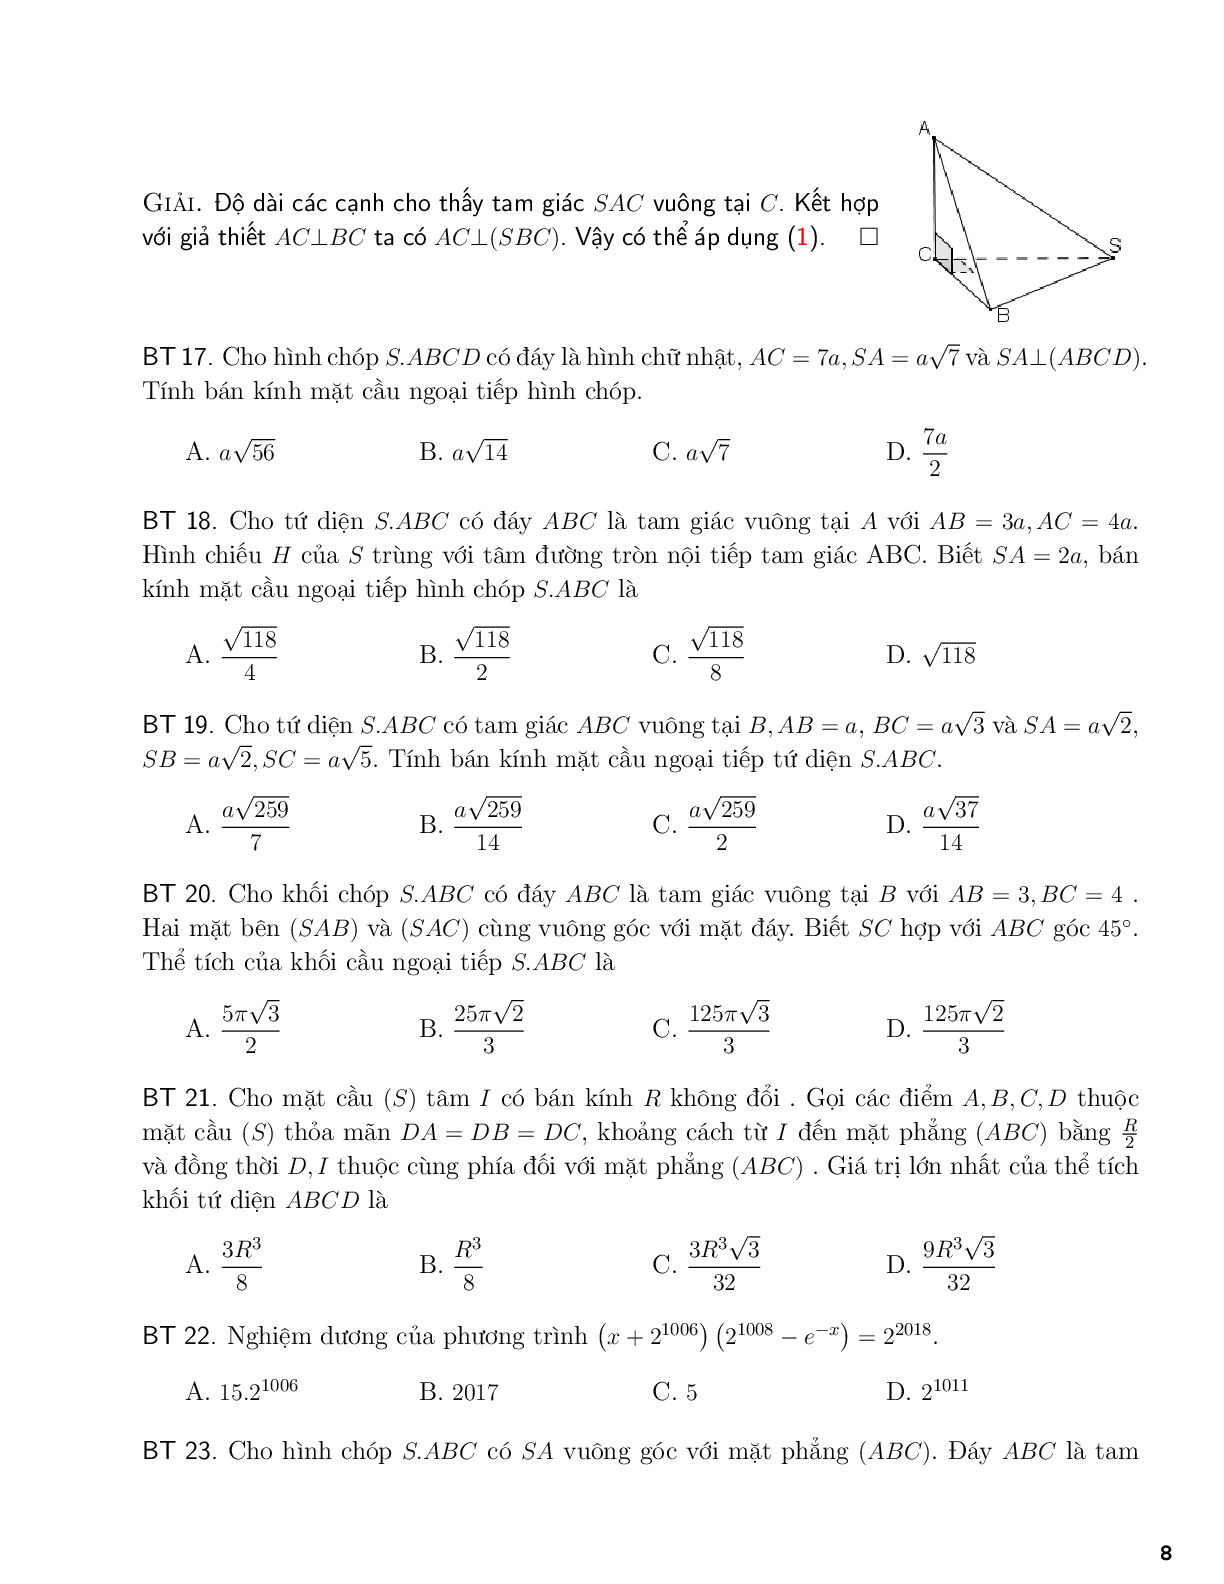 Một số công thức tính bán kính mặt cầu (trang 8)